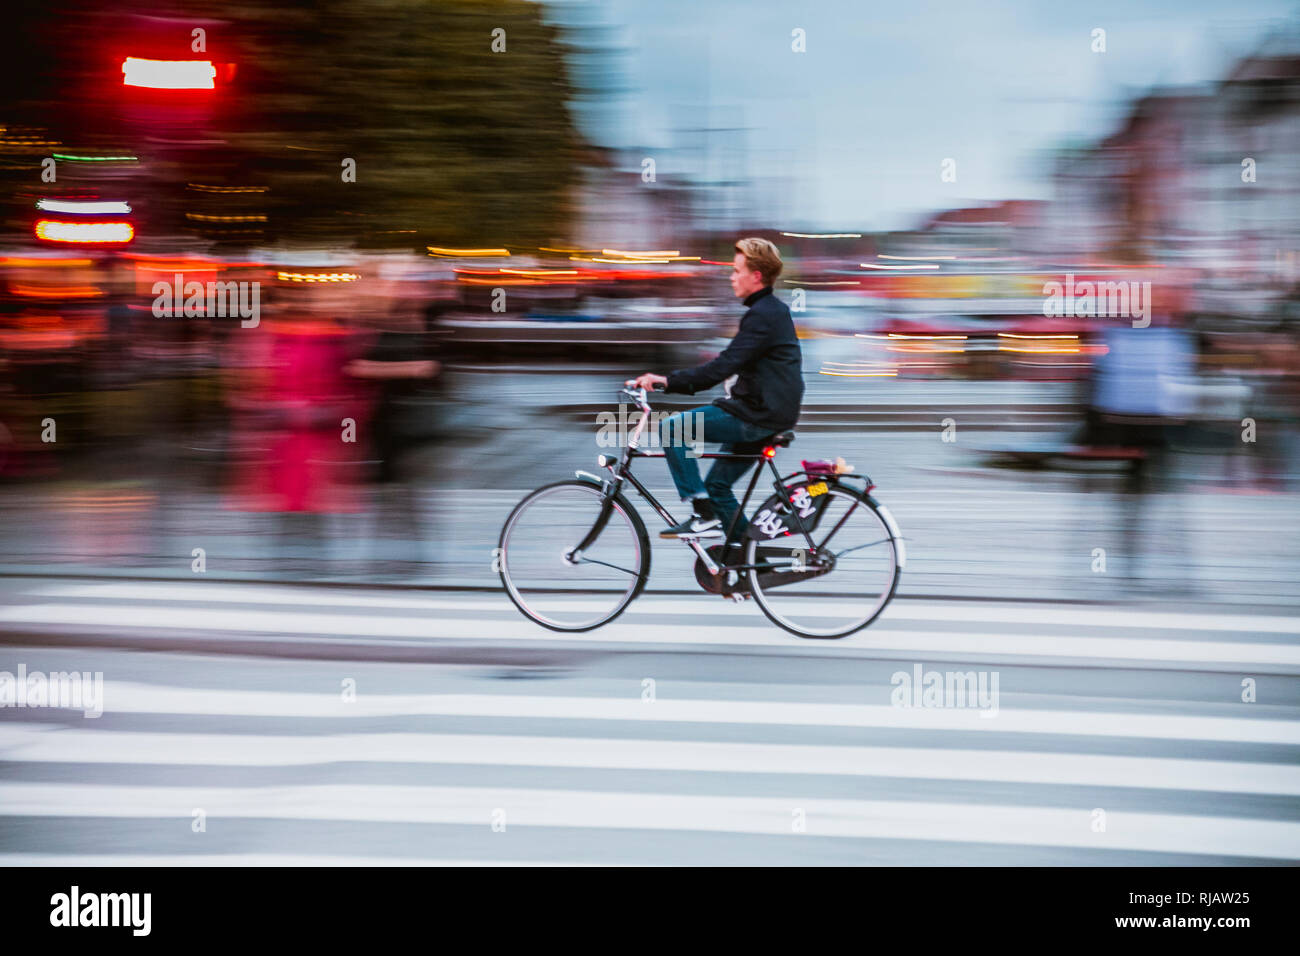 Copenhague, Danemark, 27/09/2018 : un jeune garçon voyage rapidement avec son vélo dans le centre de Copenhague Banque D'Images